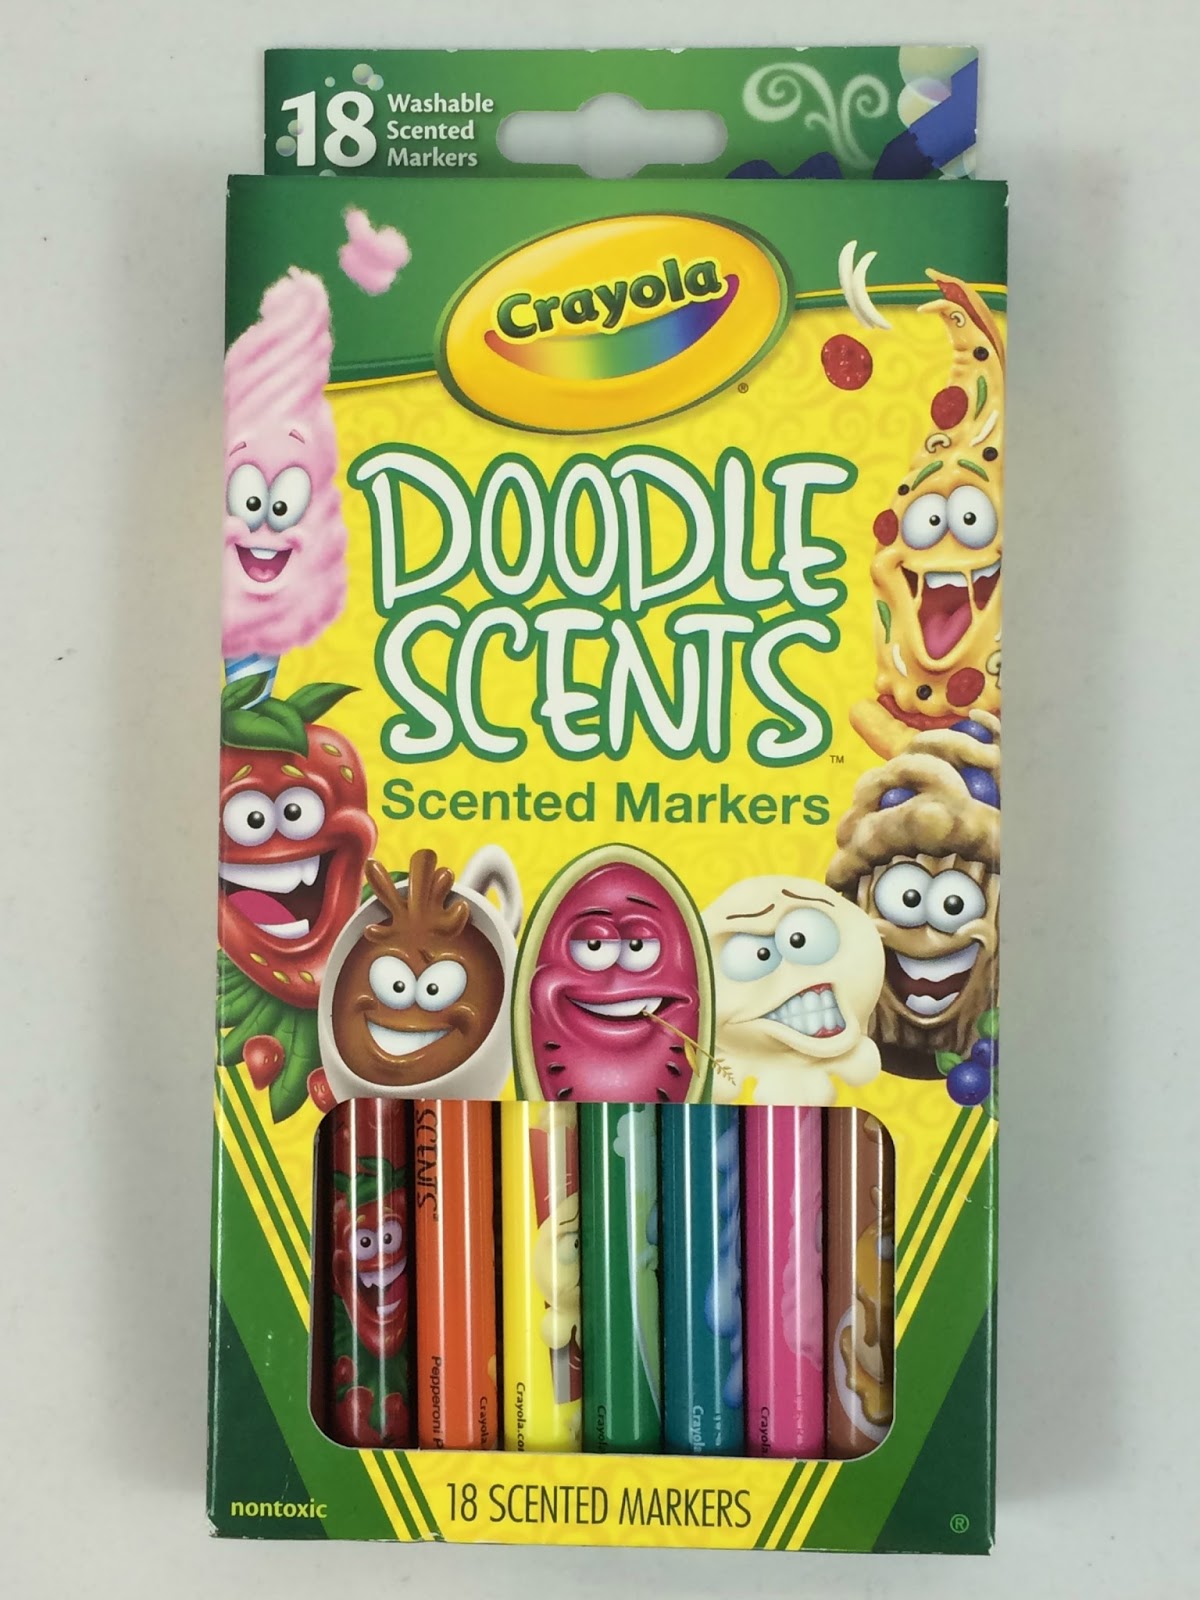 Crayola 30 ct. Twistables Colored Pencils